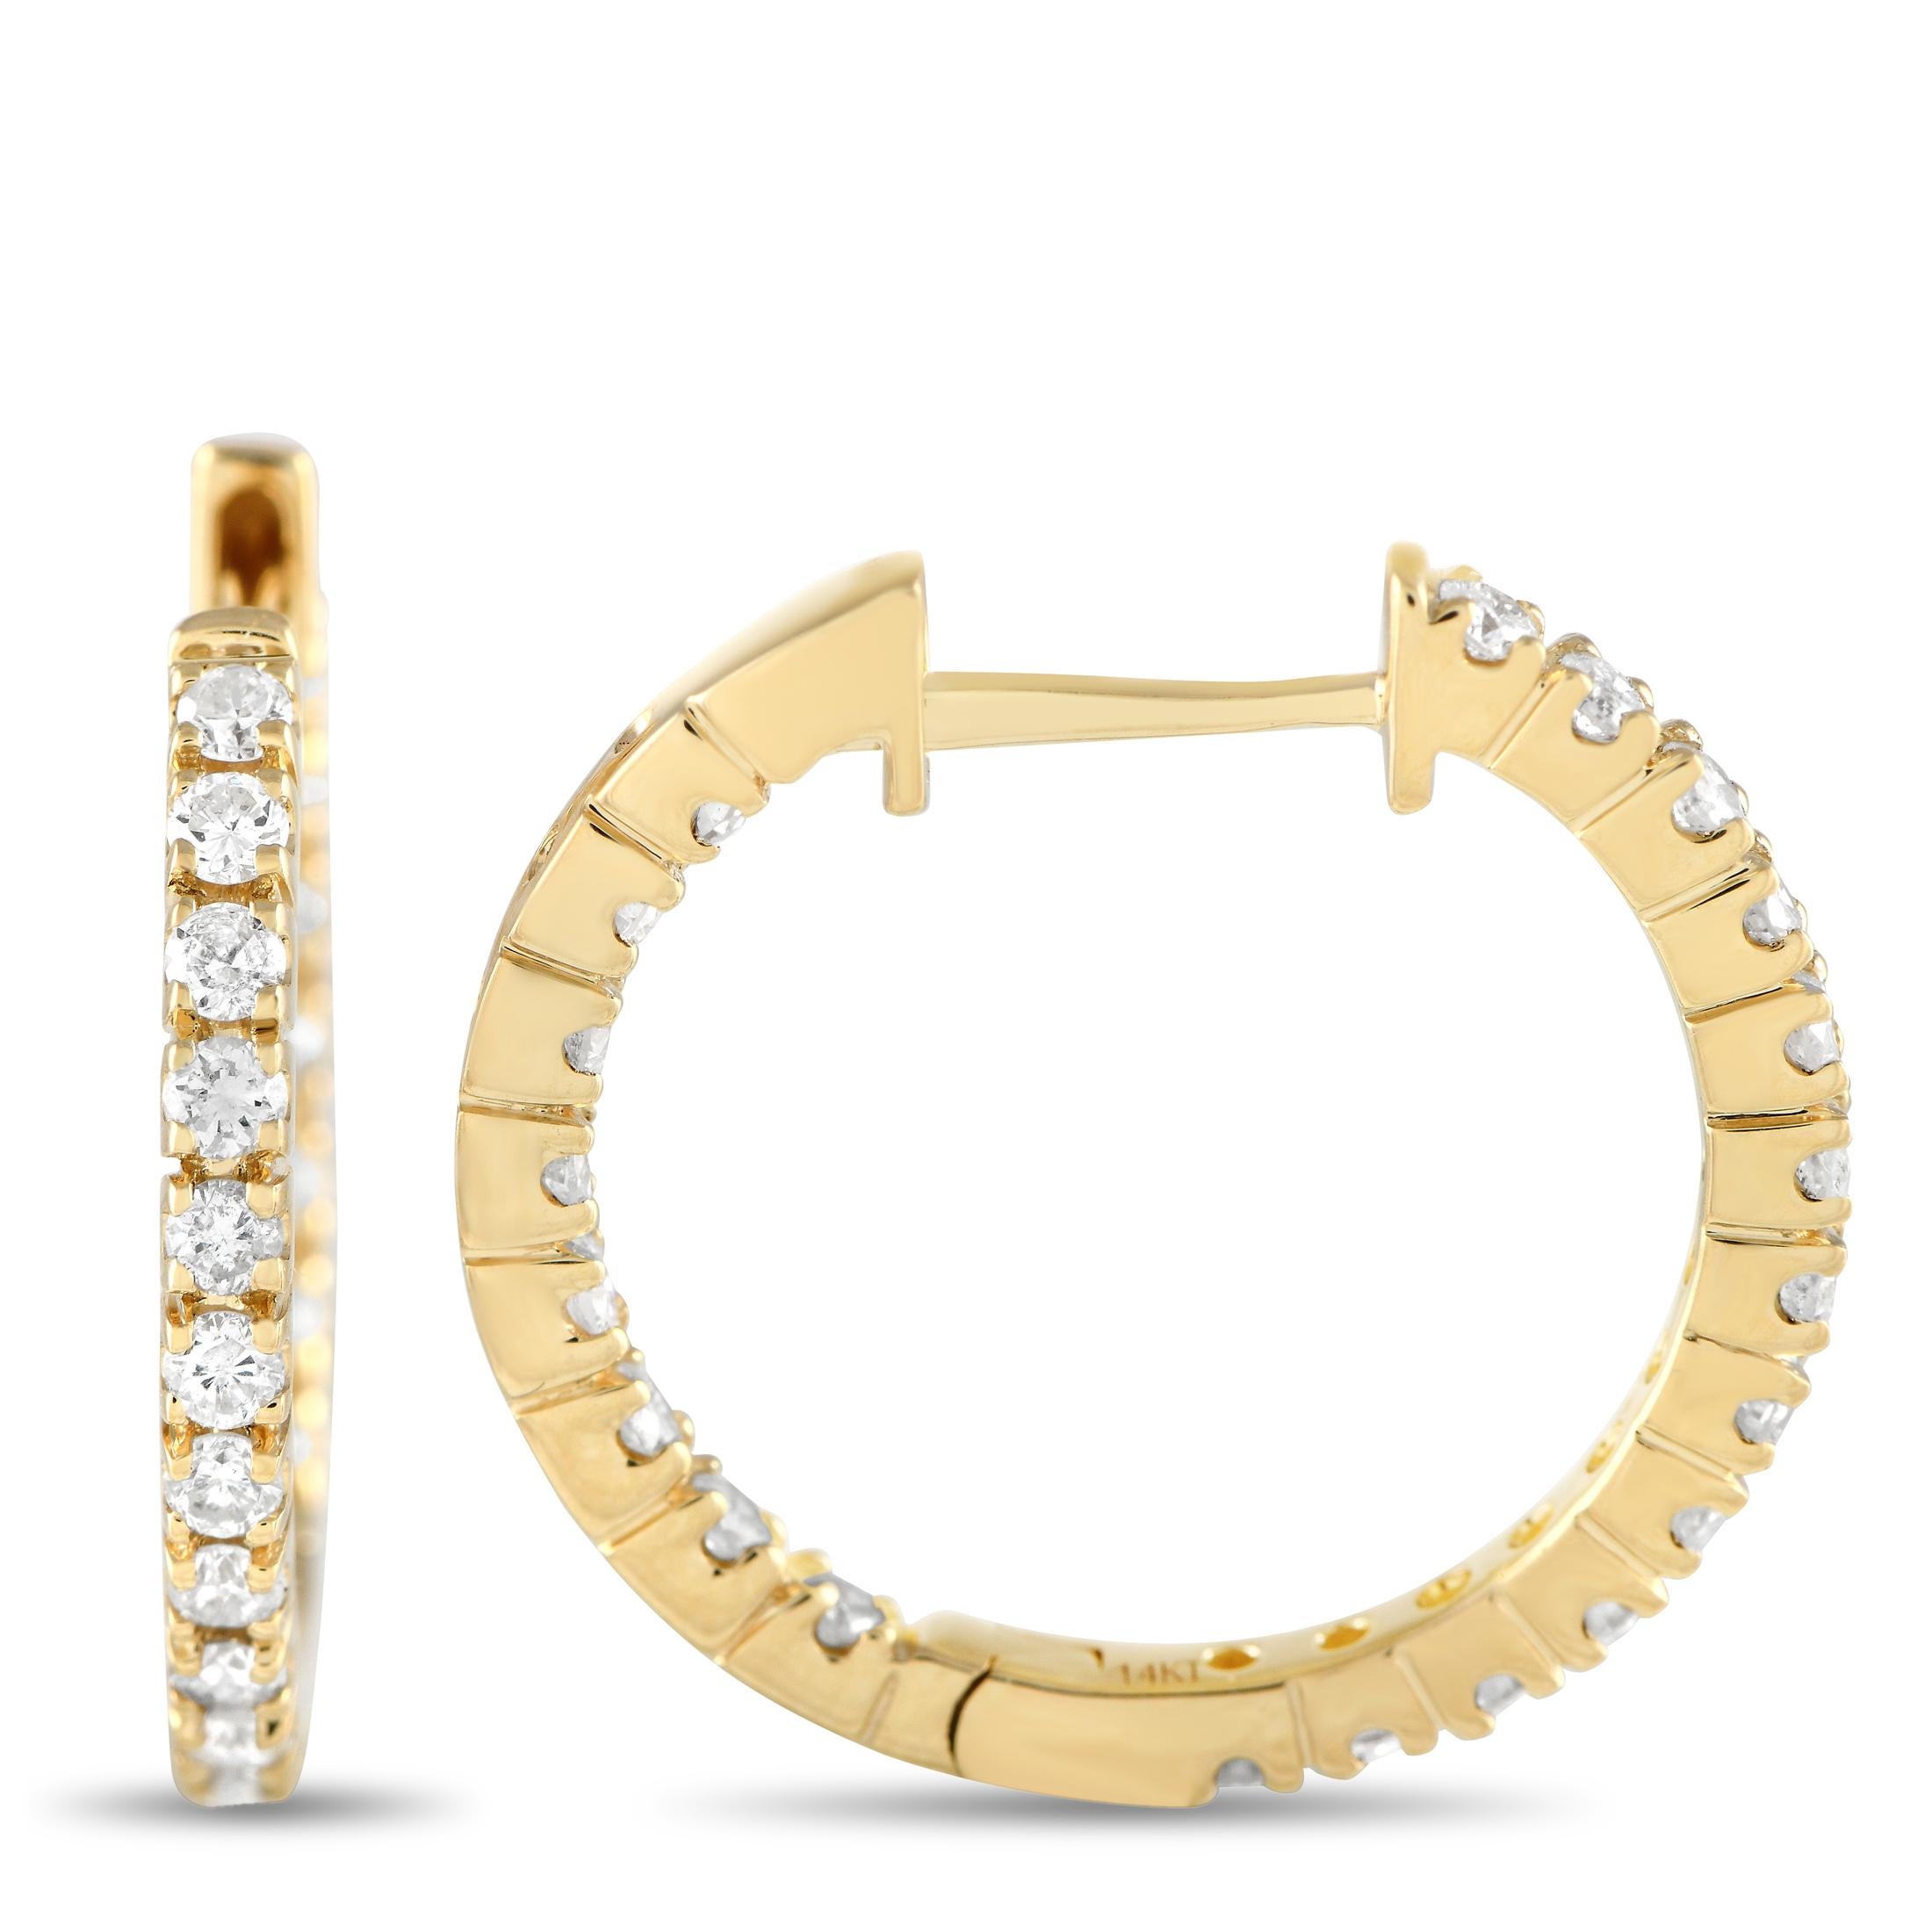 Verleihen Sie Ihren Alltagsoutfits Eleganz mit diesen Diamantohrringen. Jeder Reif ist aus 14 Karat Gelbgold gefertigt und mit einer Reihe von Diamanten auf der Vorderseite und auf der Rückseite verziert. Diese glitzernden Ohrringe, die auch als